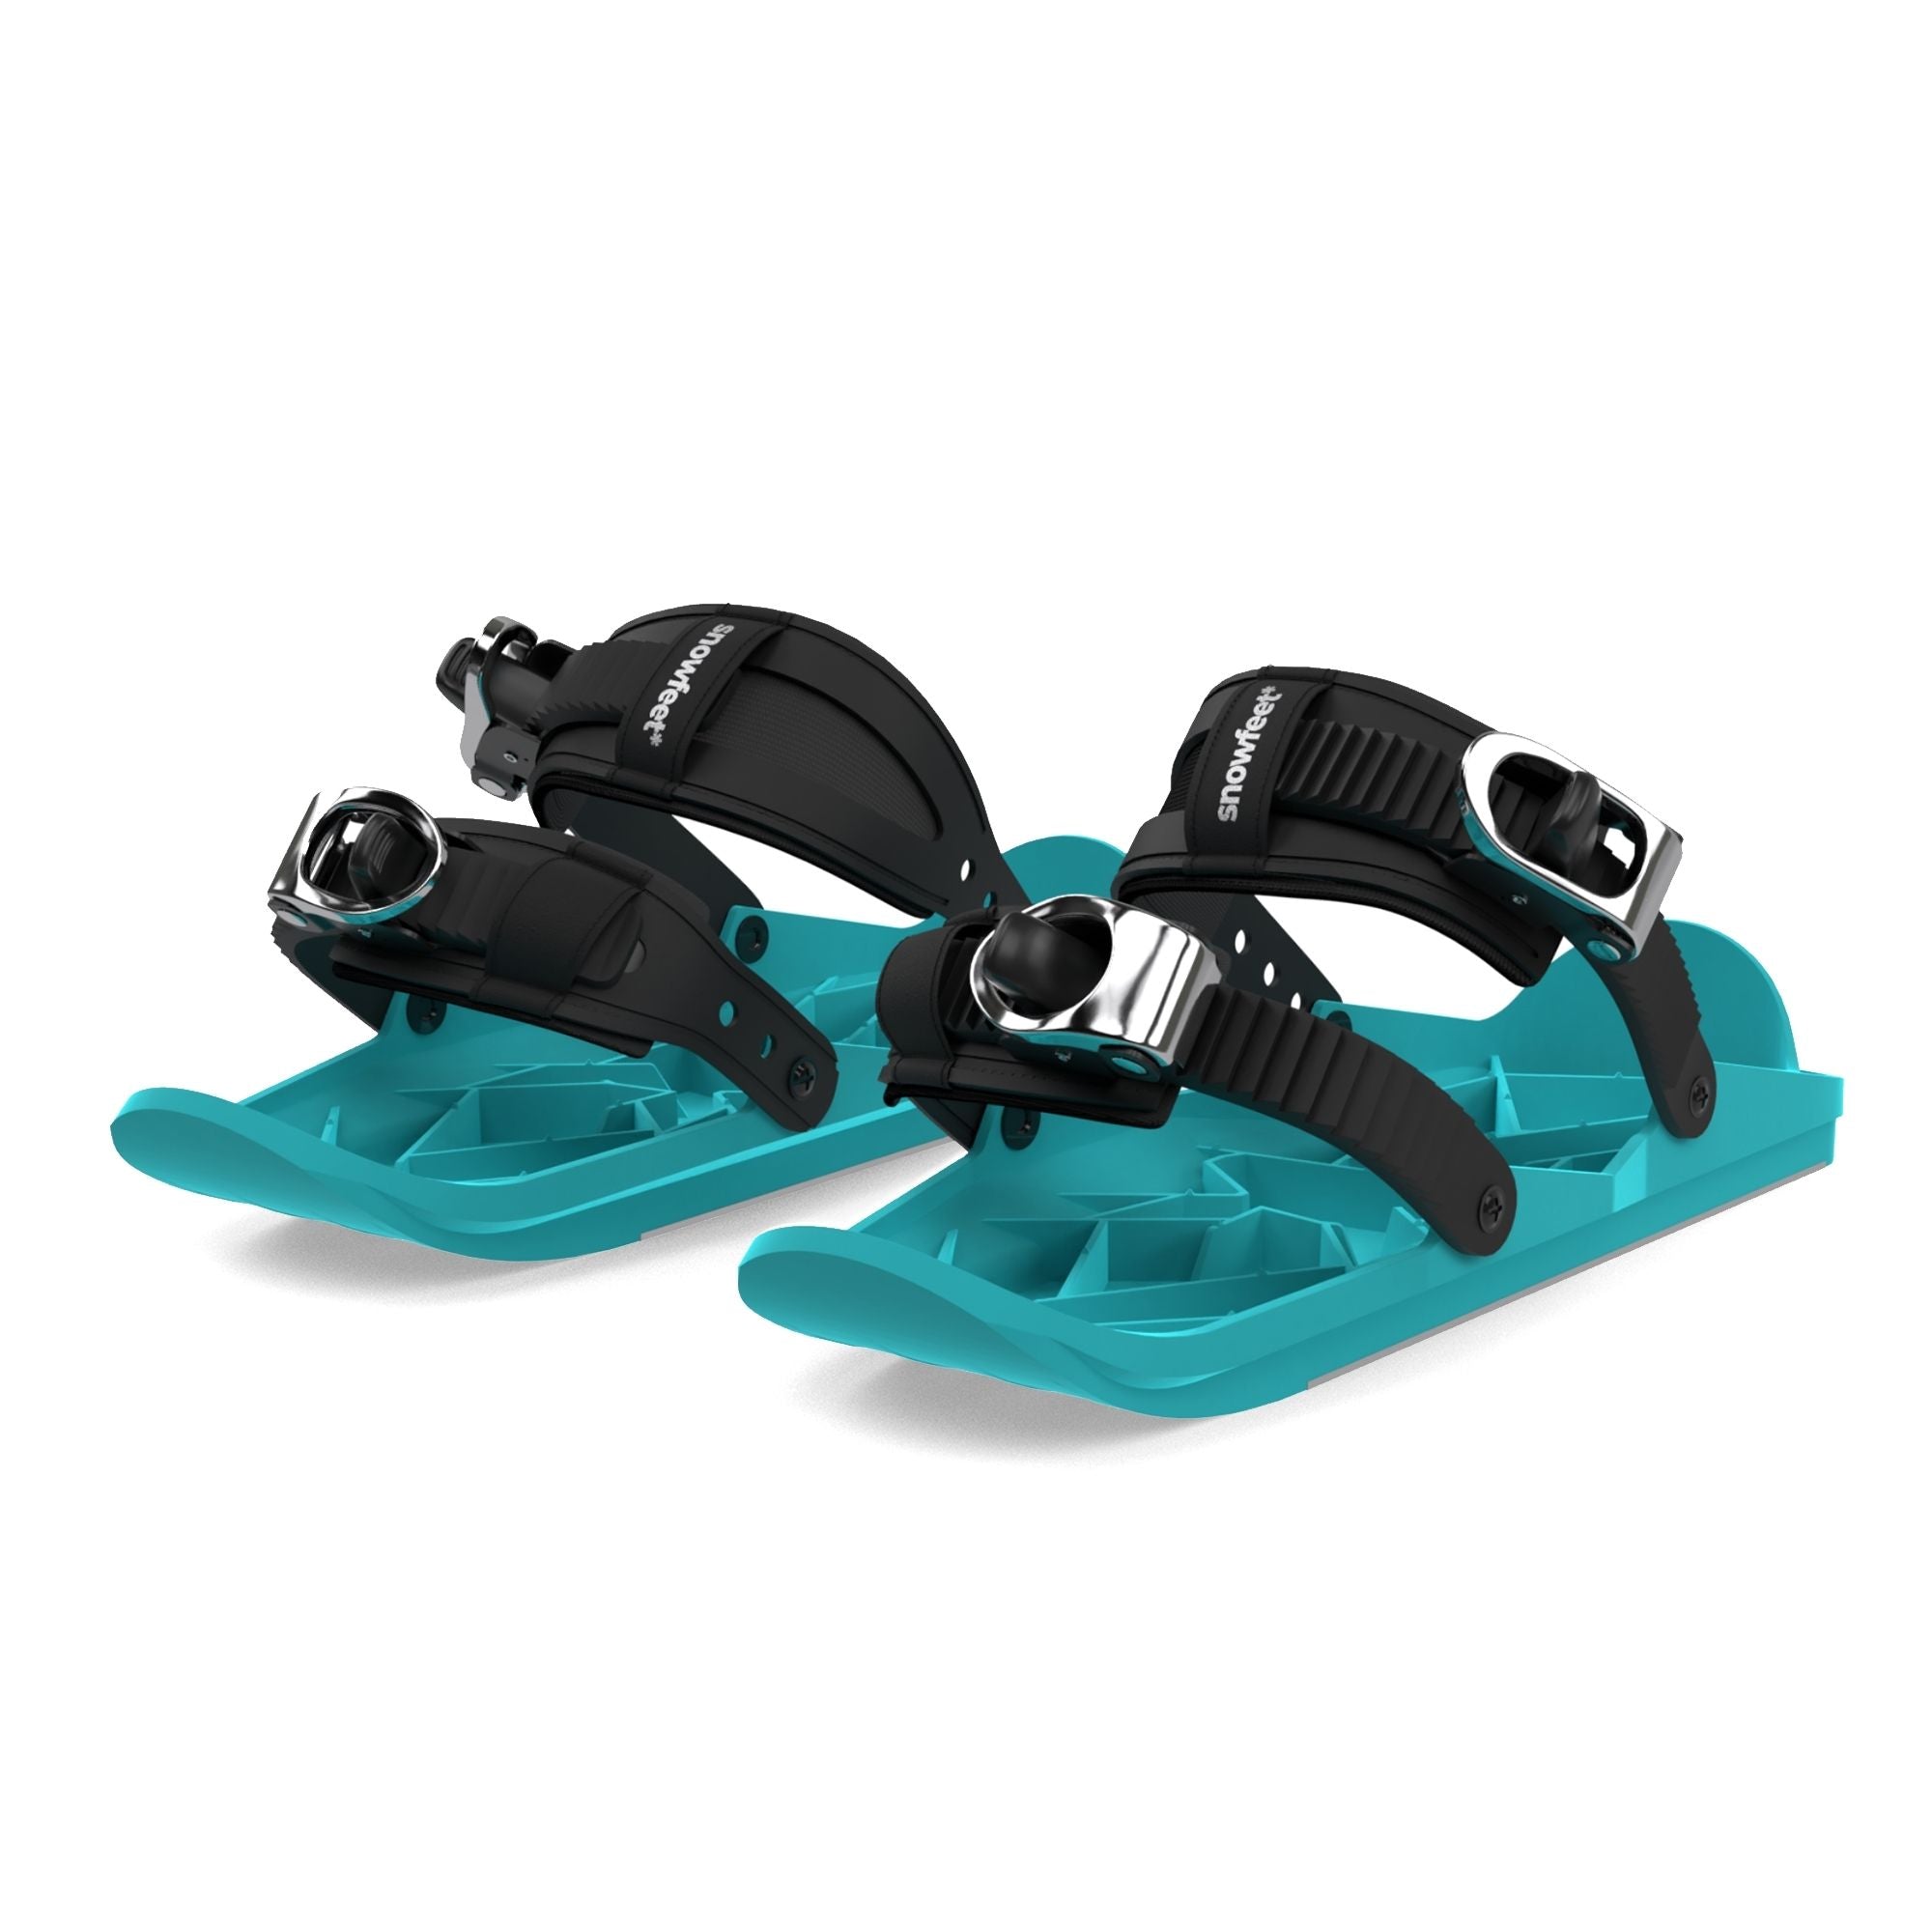 Snowfeet - Mini Ski Skates For Snow - Official | Price $170